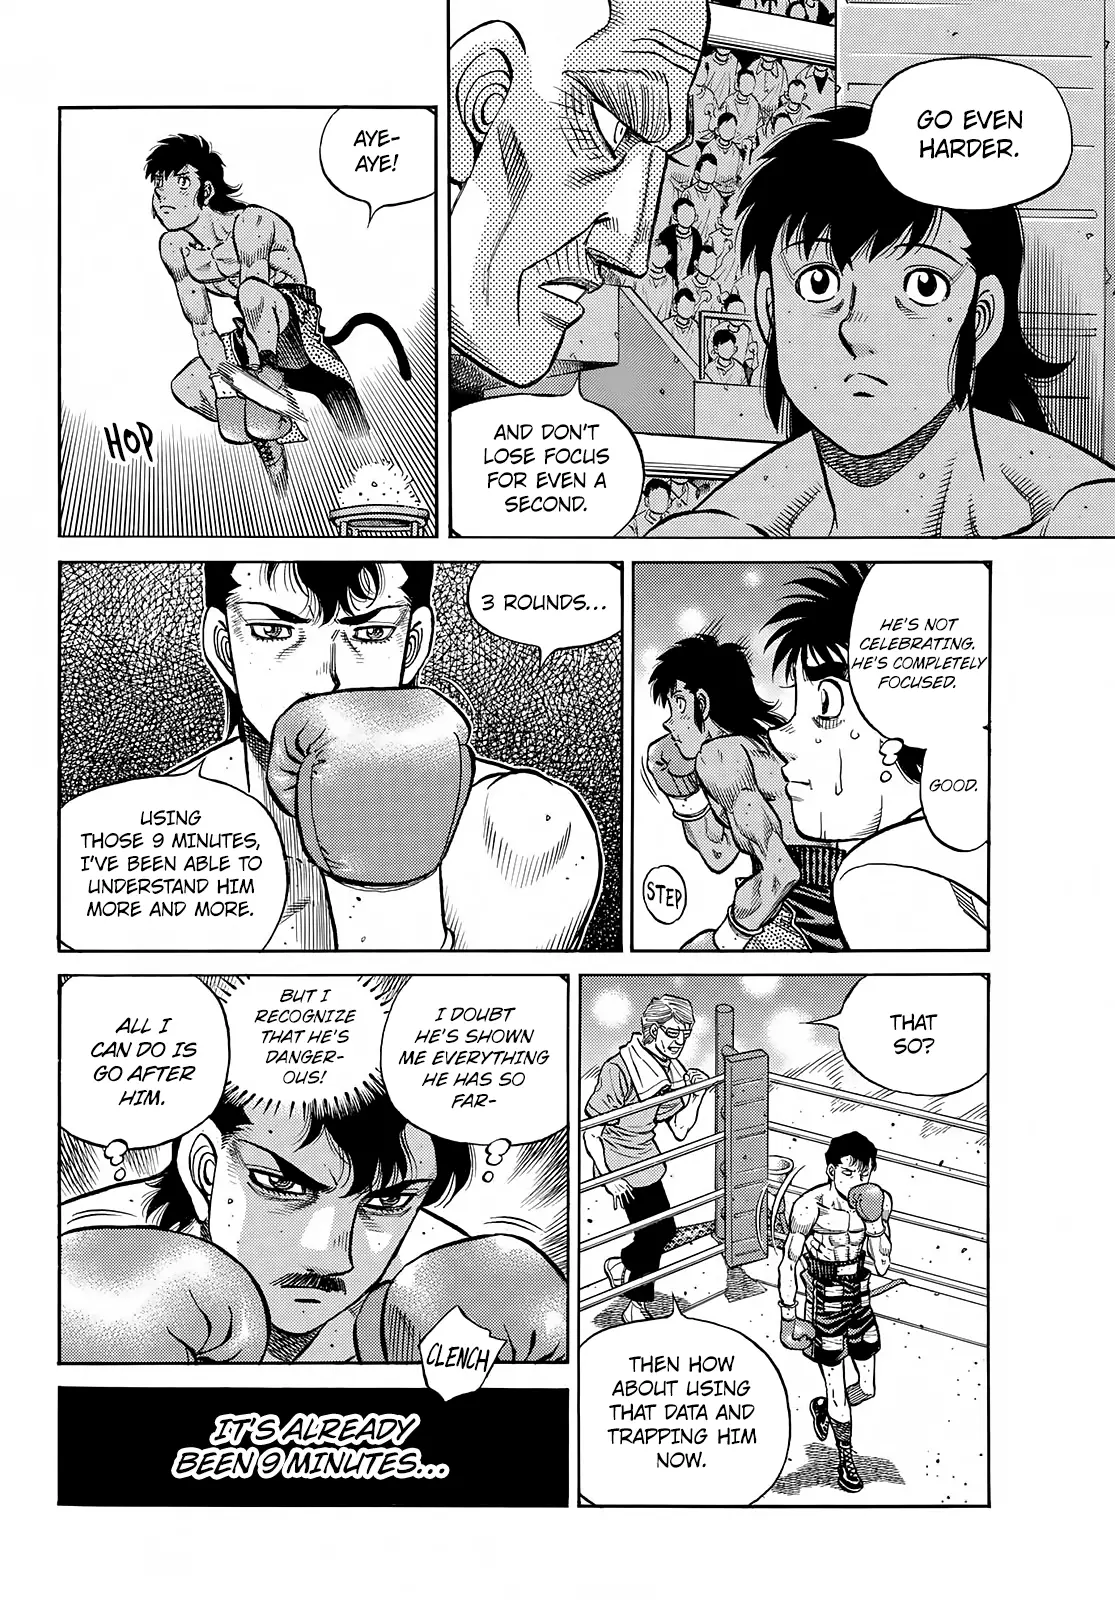 Hajime no Ippo - 1400 page 3-7a48c37a